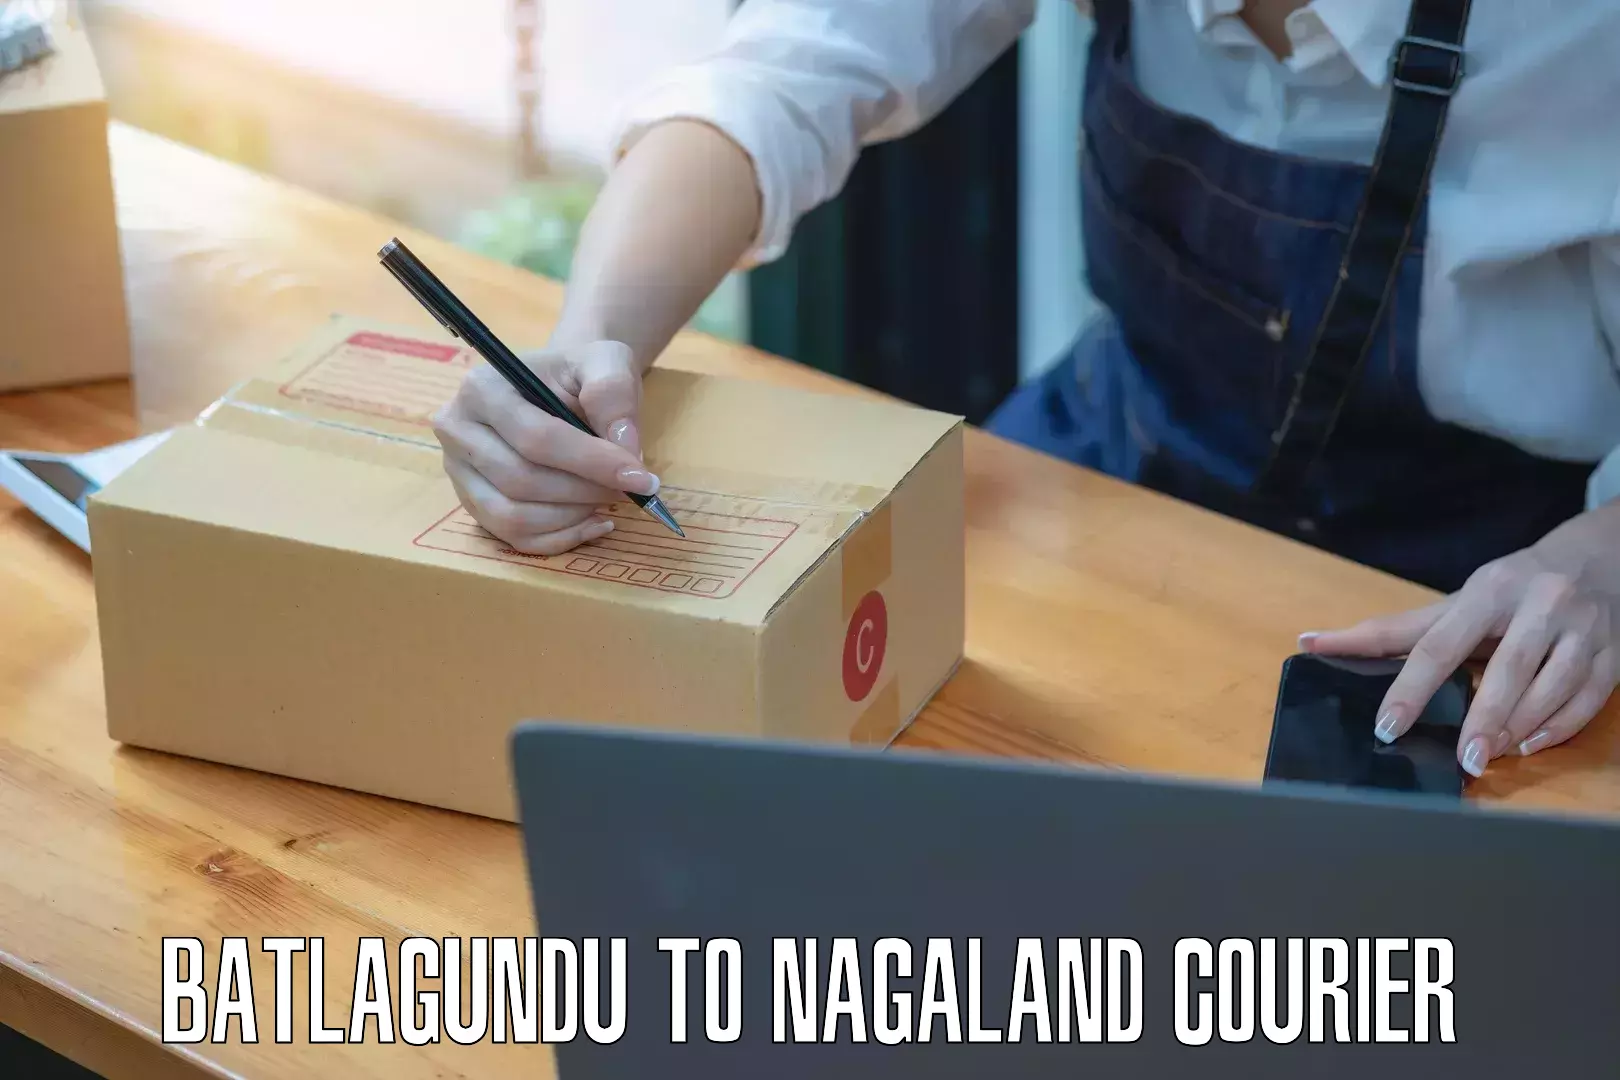 Secure packaging in Batlagundu to NIT Nagaland